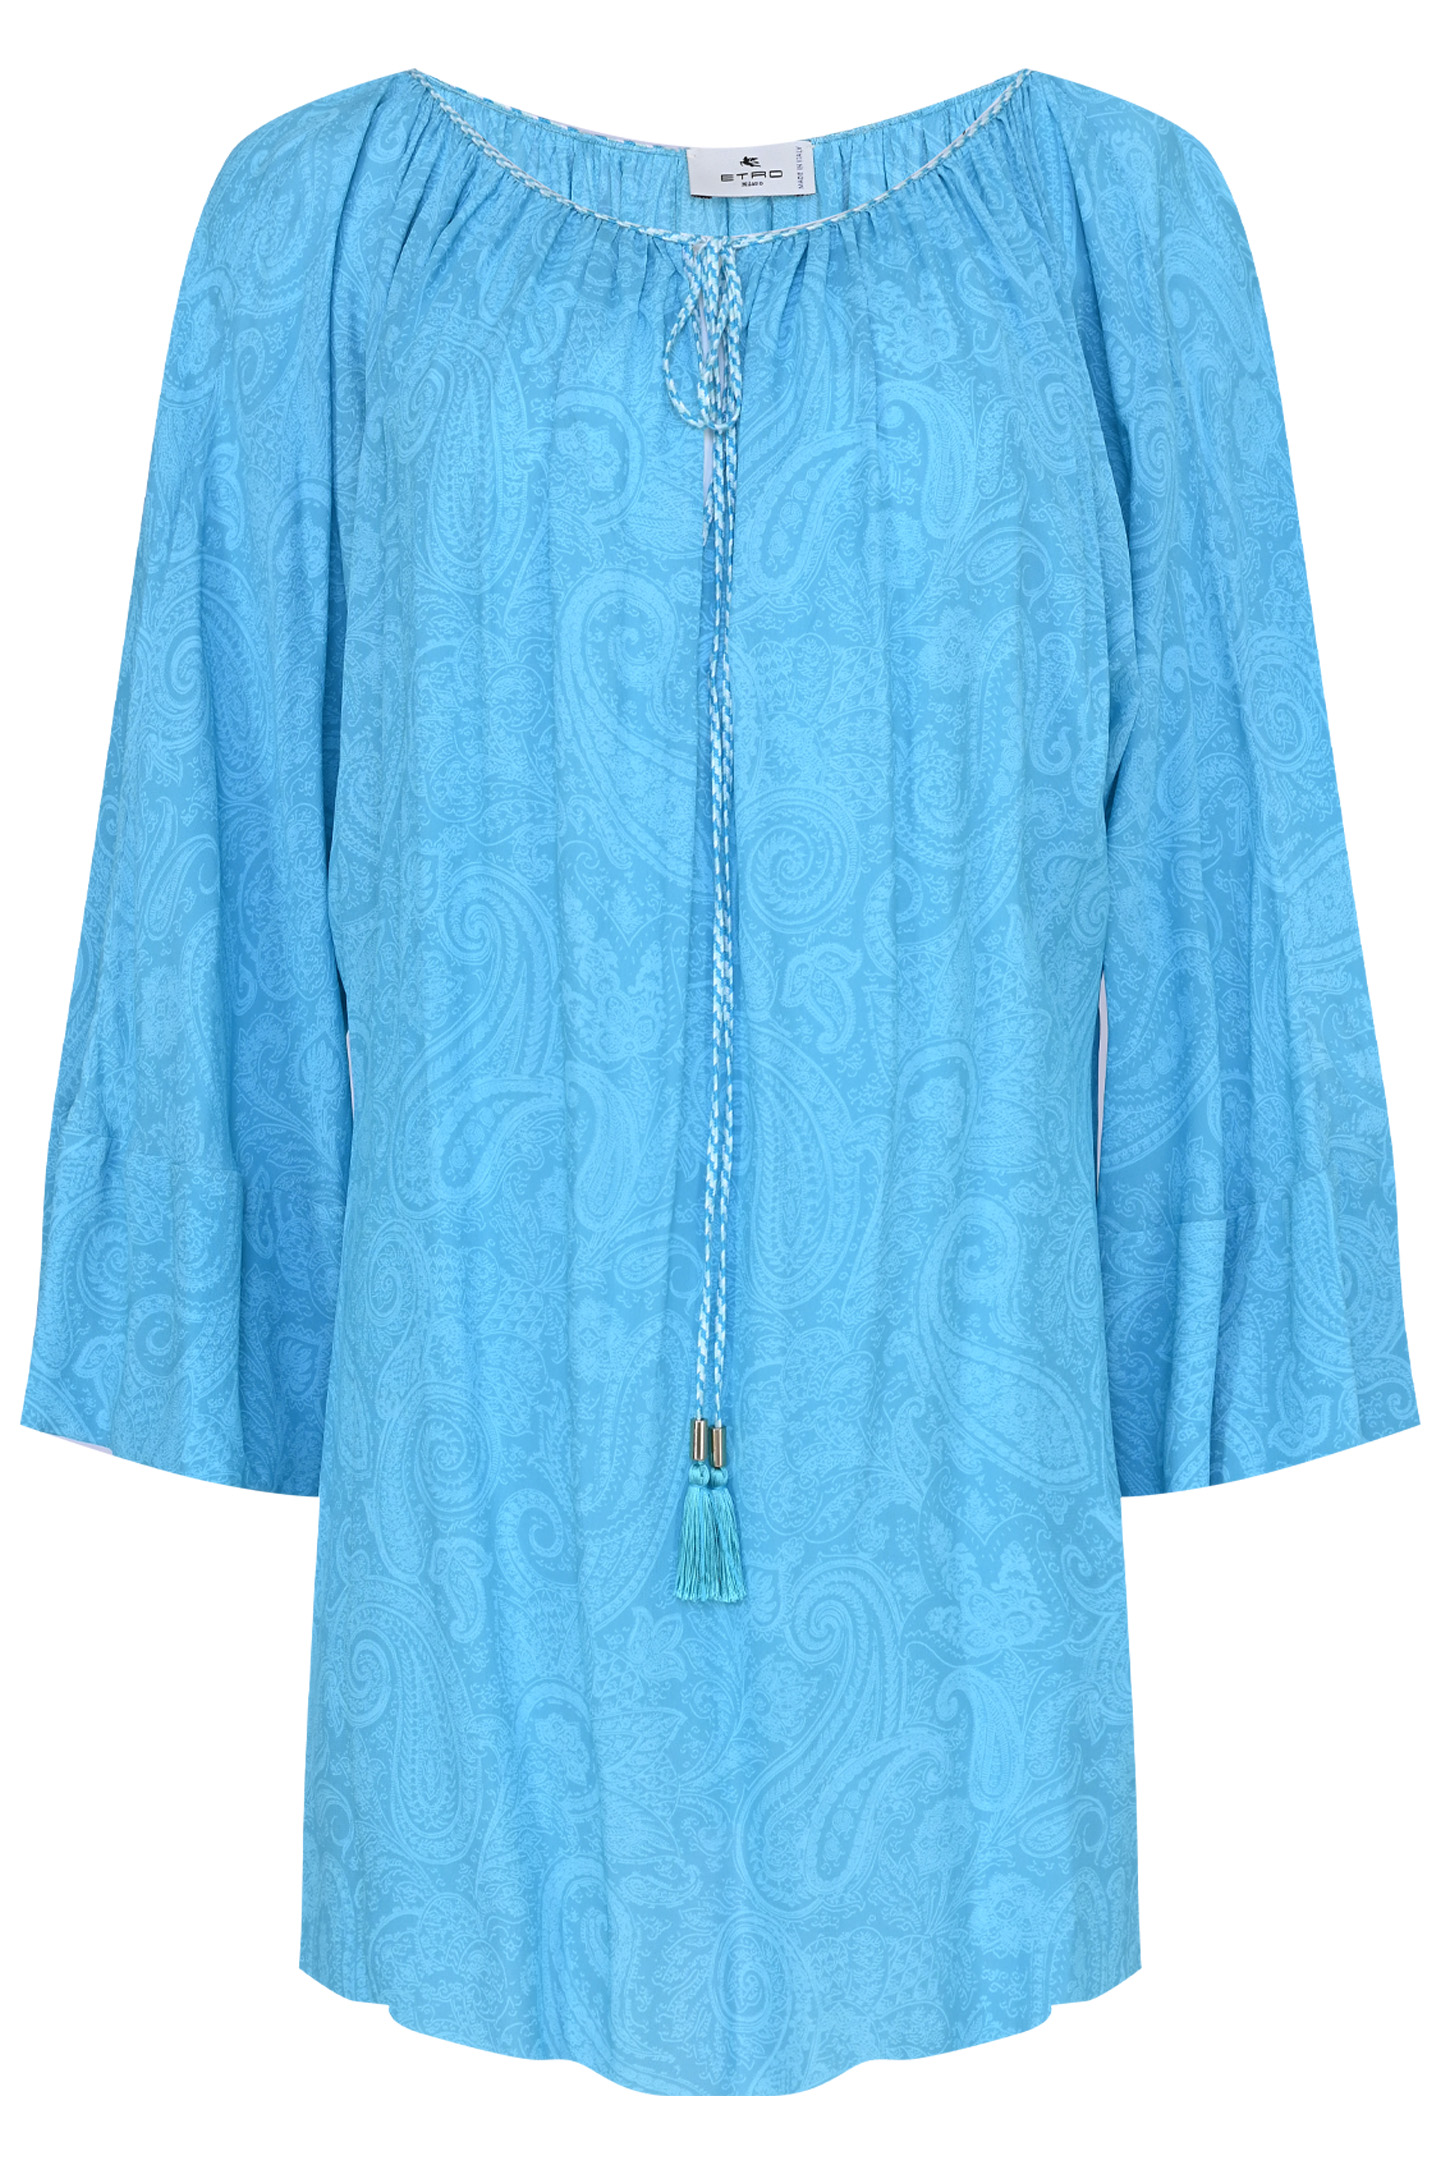 Блуза ETRO 12647 4535, цвет: Голубой, Женский